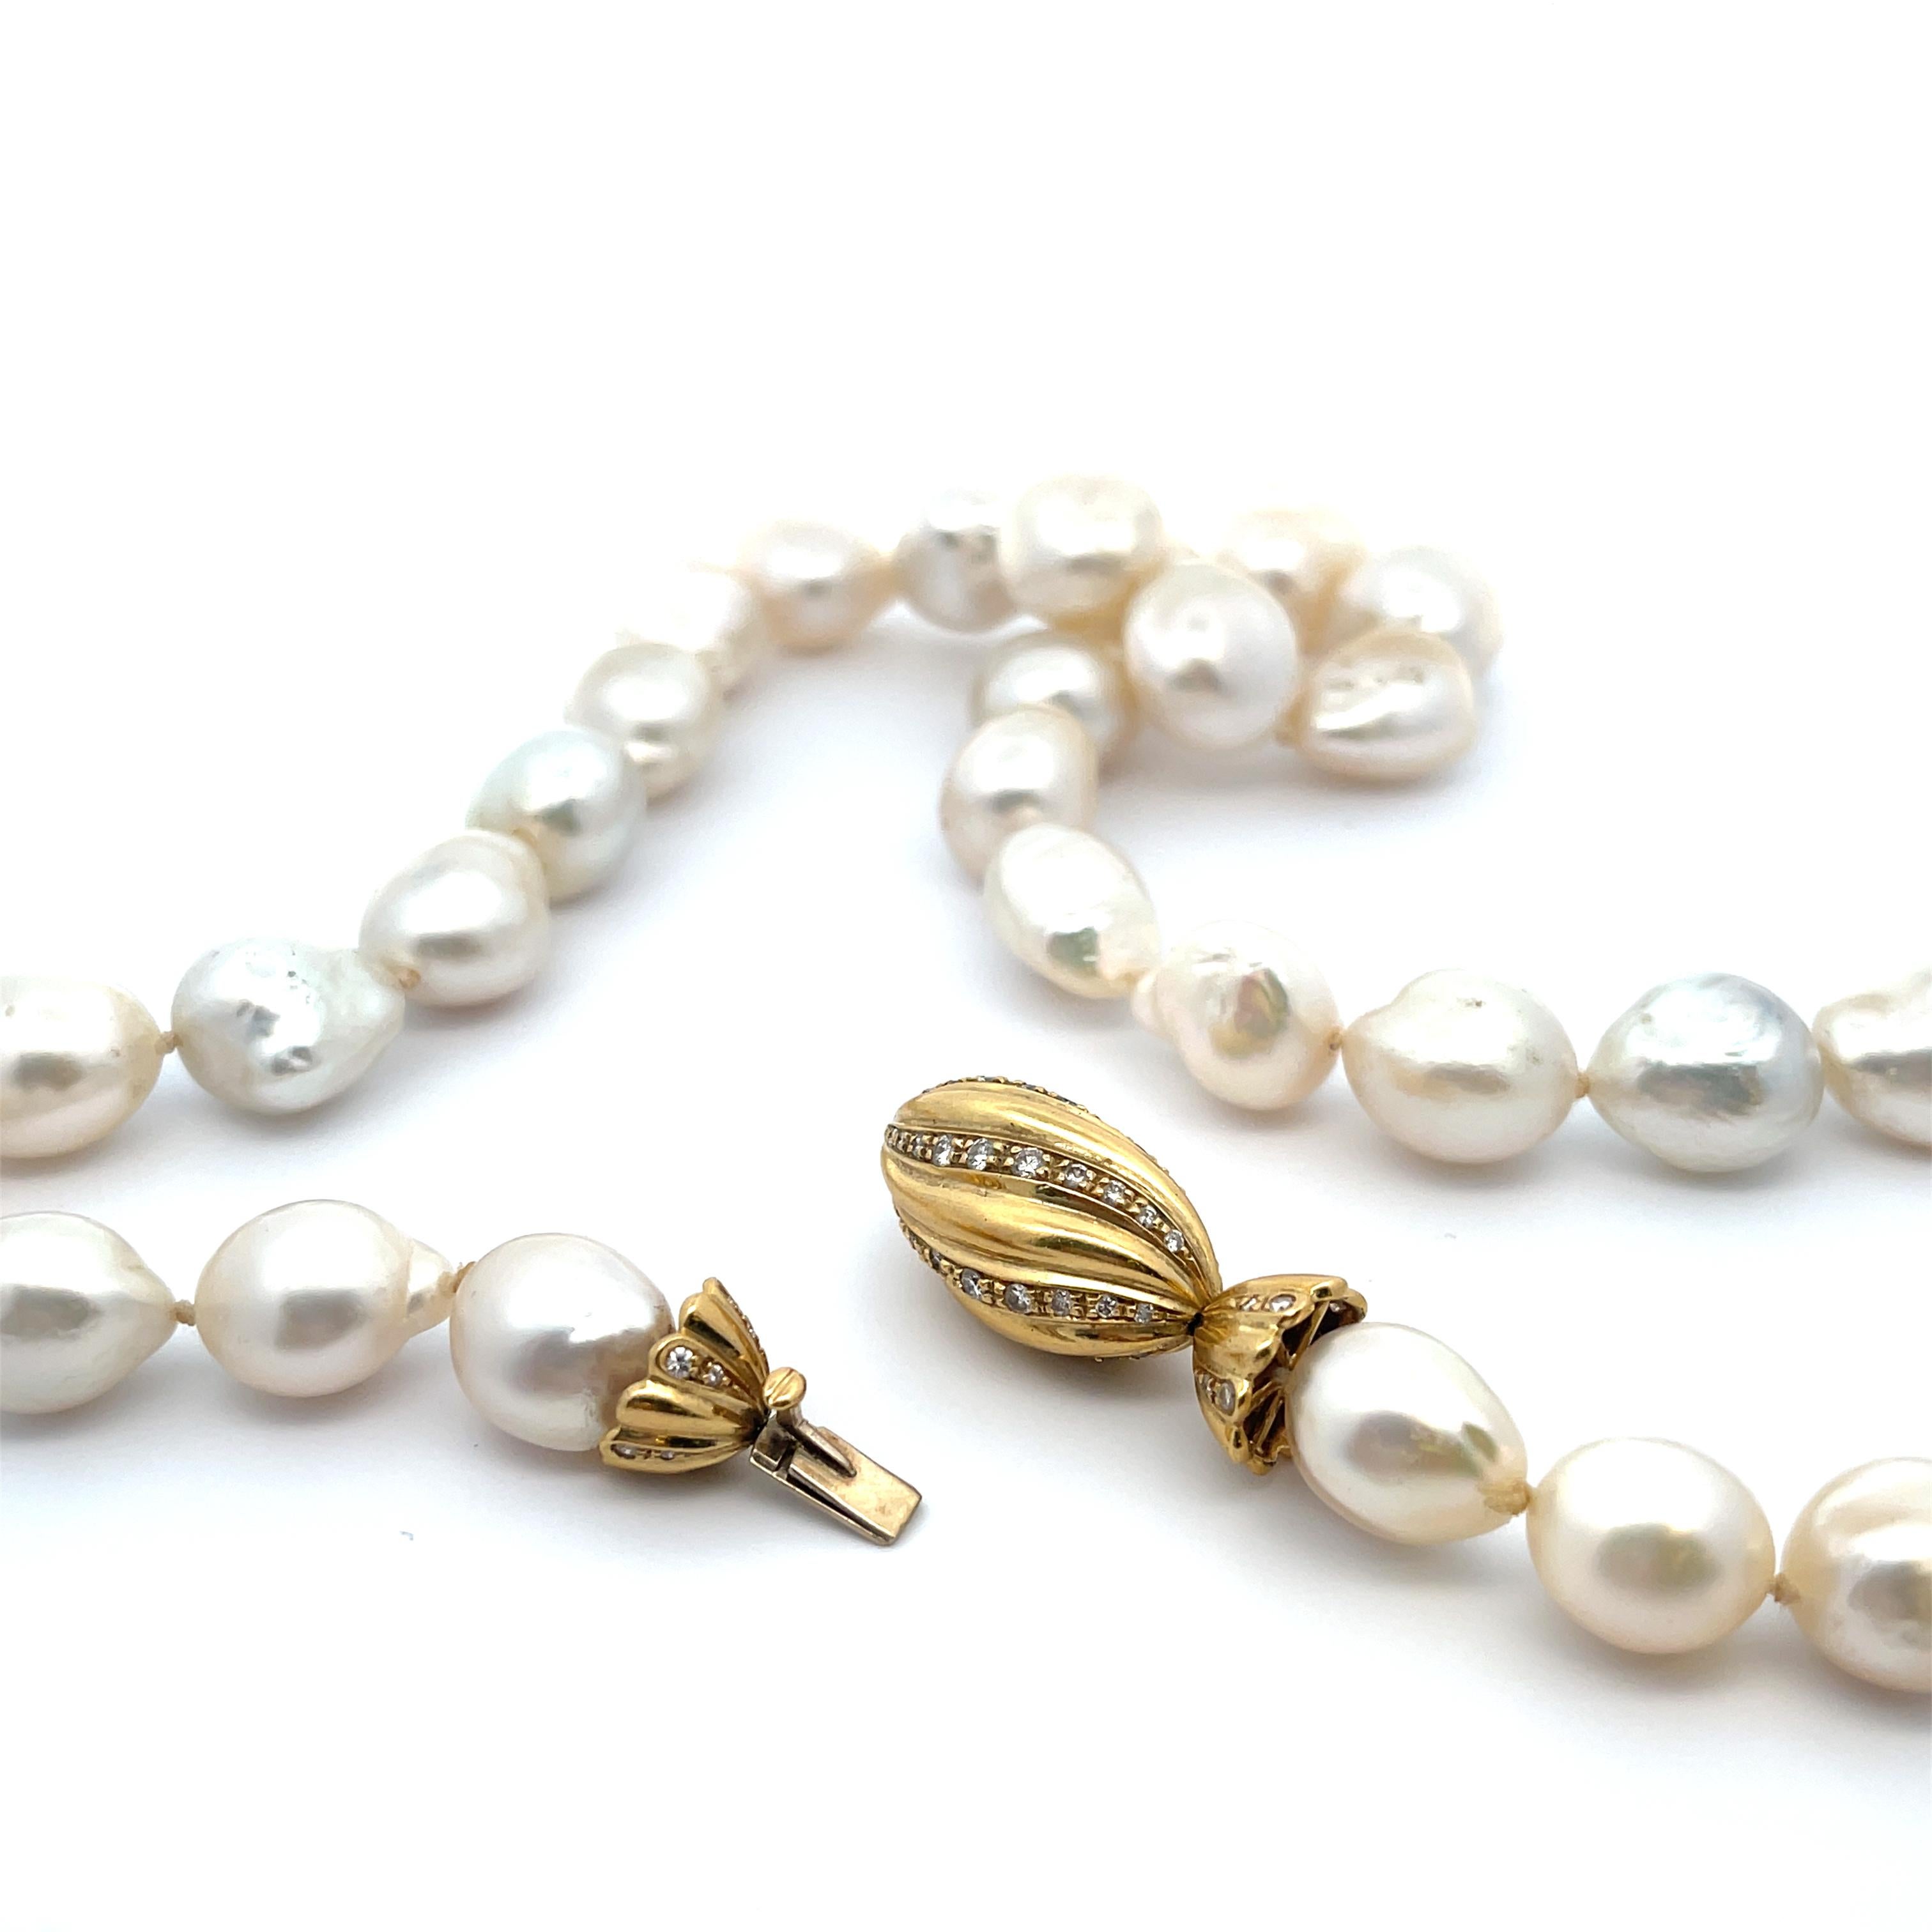 Collier de perles baroques blanches des mers du Sud avec fermoir en or jaune 18 carats et diamants. Perles de 13 à 15 mm.
23